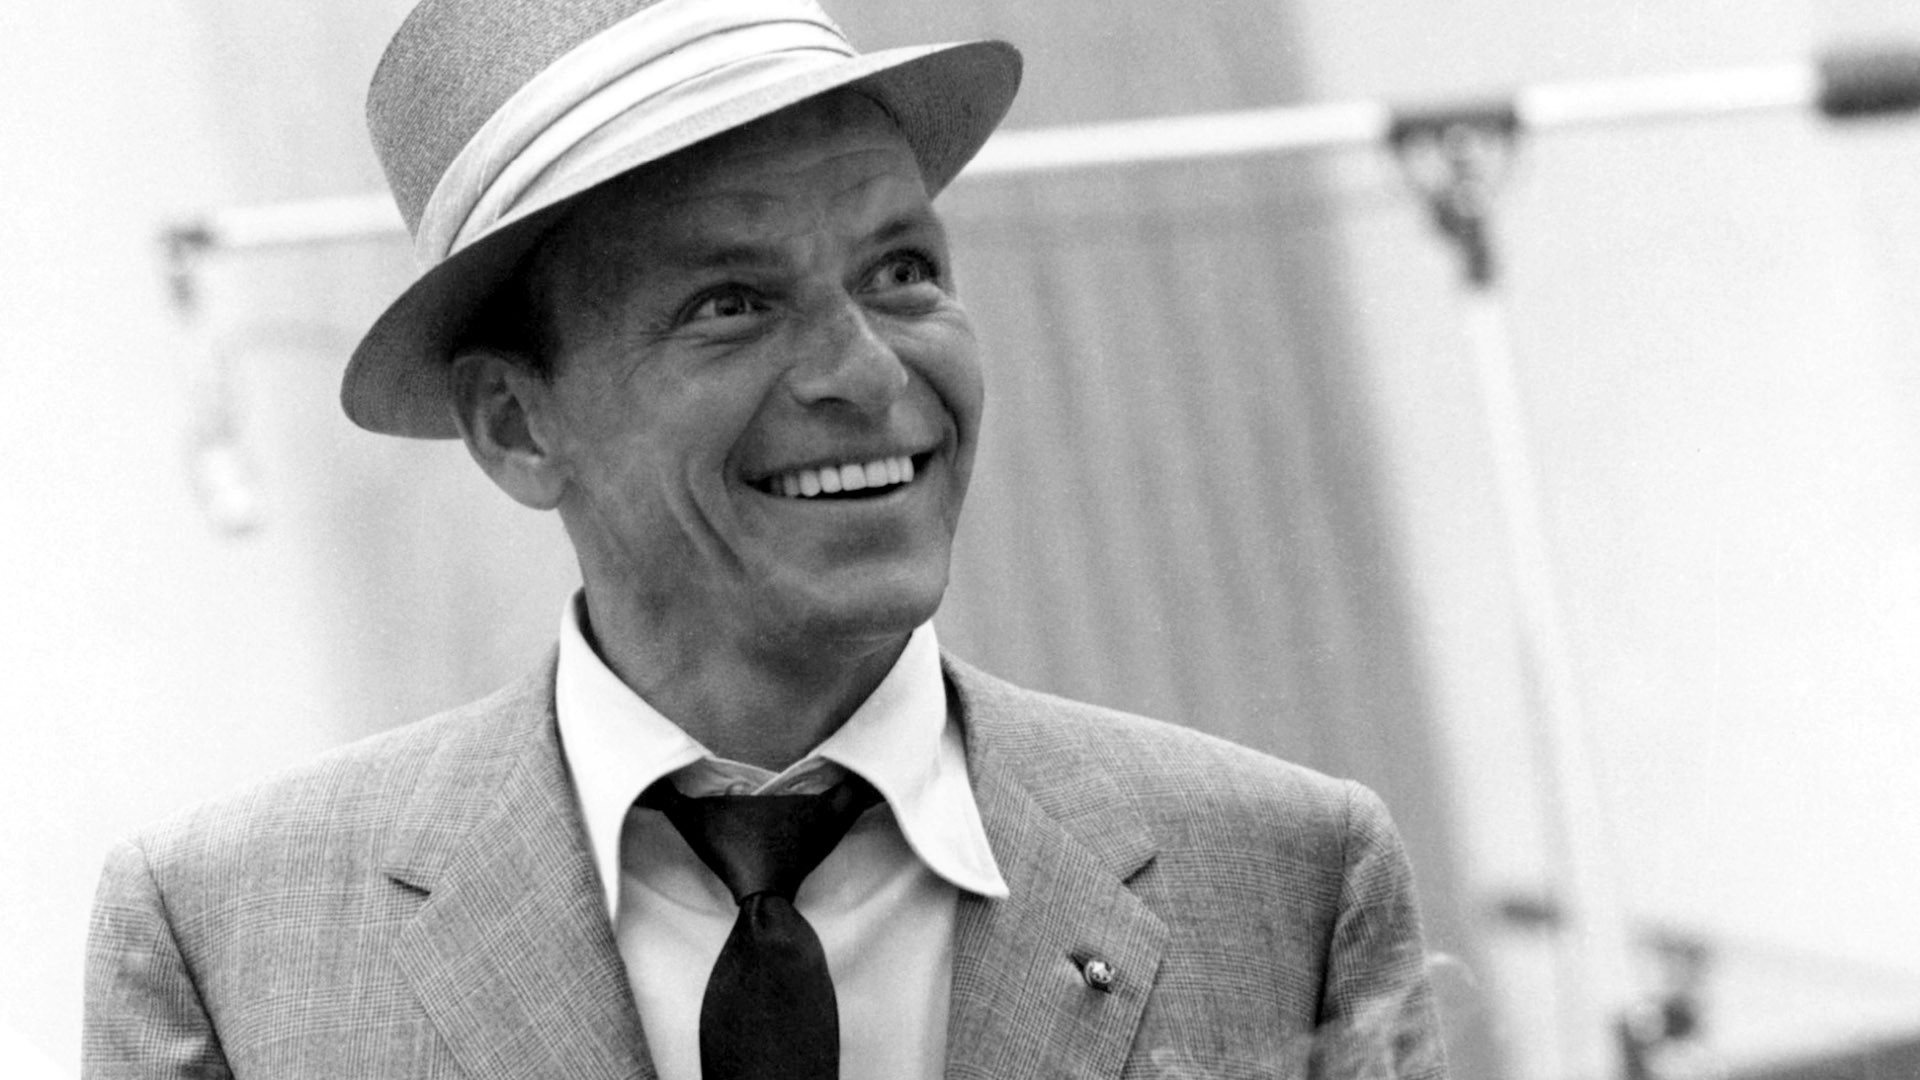 People 1920x1080 men actor Frank Sinatra smiling monochrome hat suits tie legend